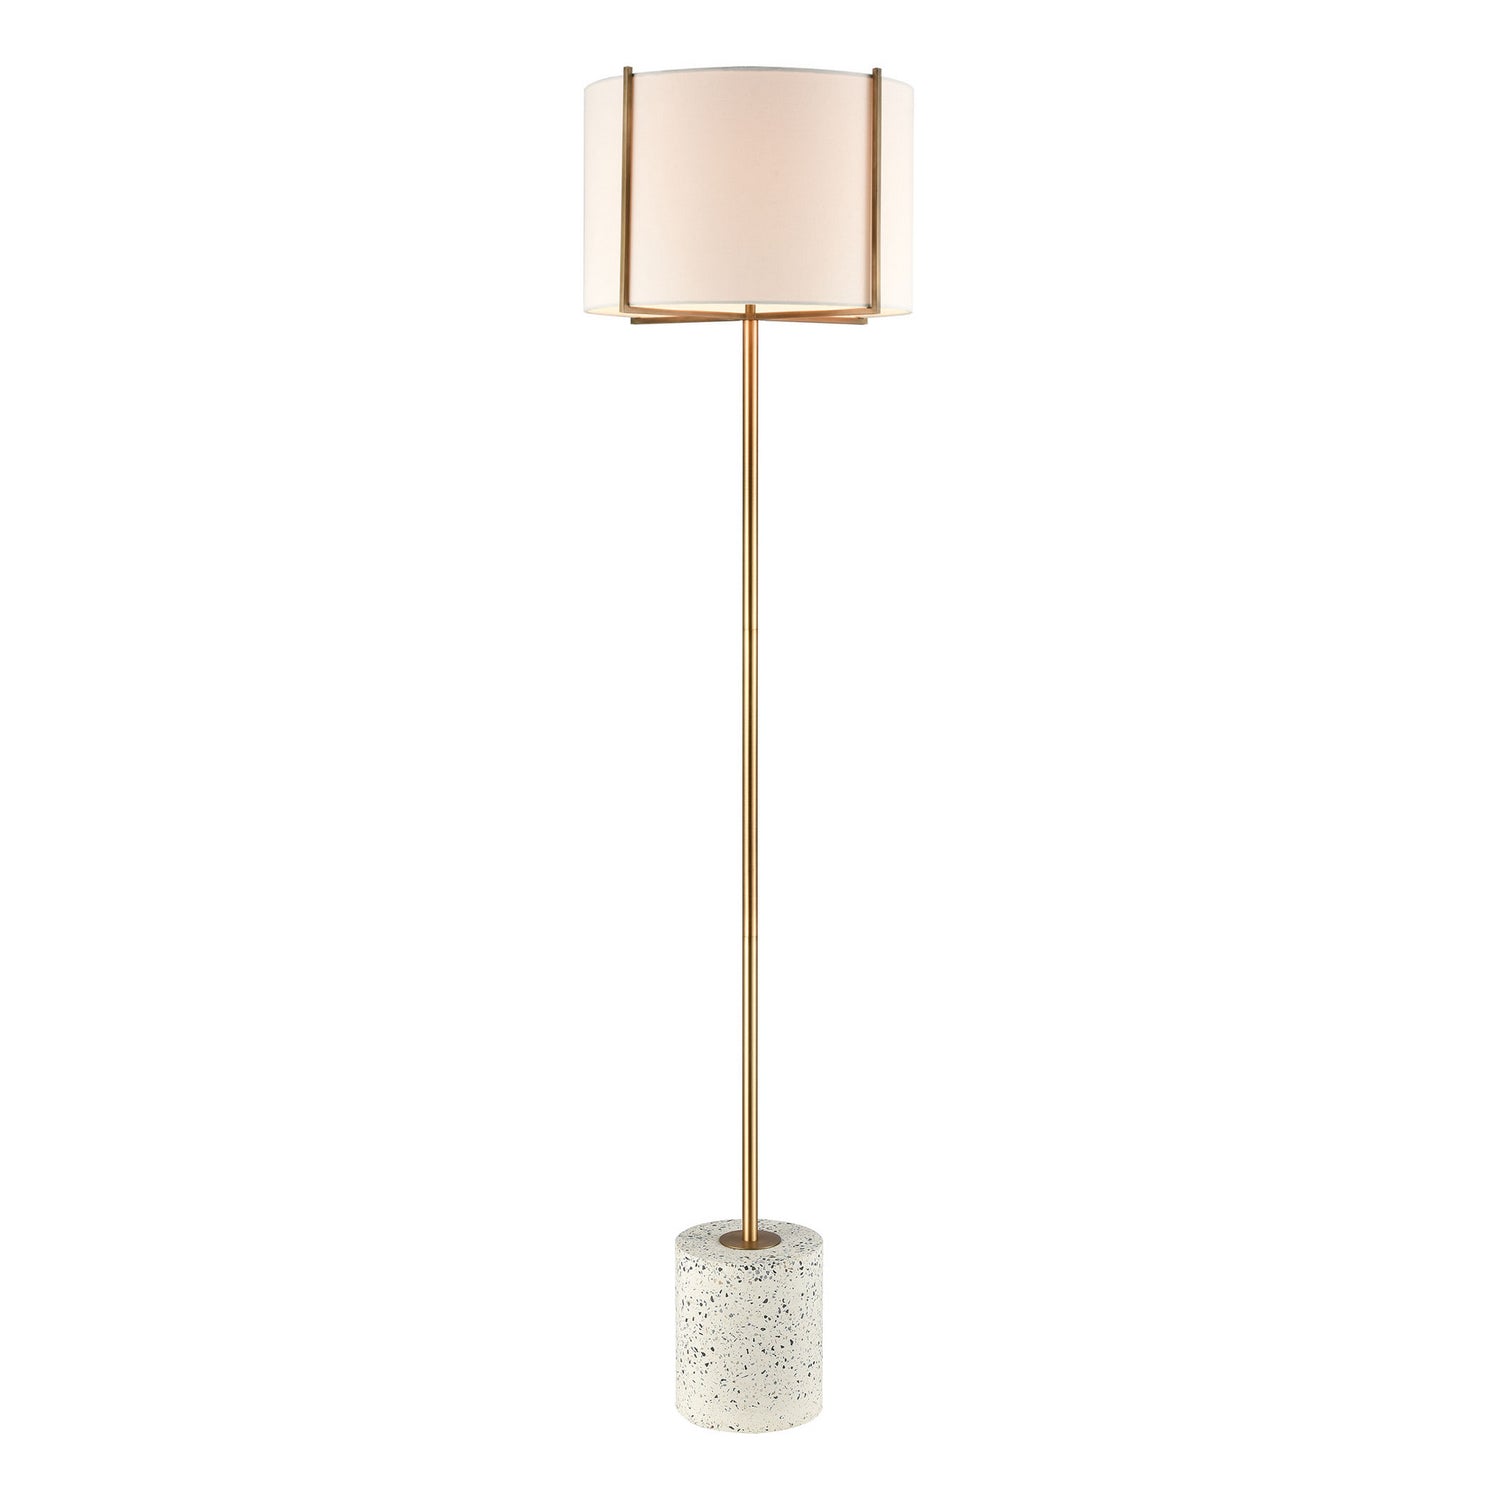 ELK Home - D4550 - One Light Floor Lamp - Trussed - White